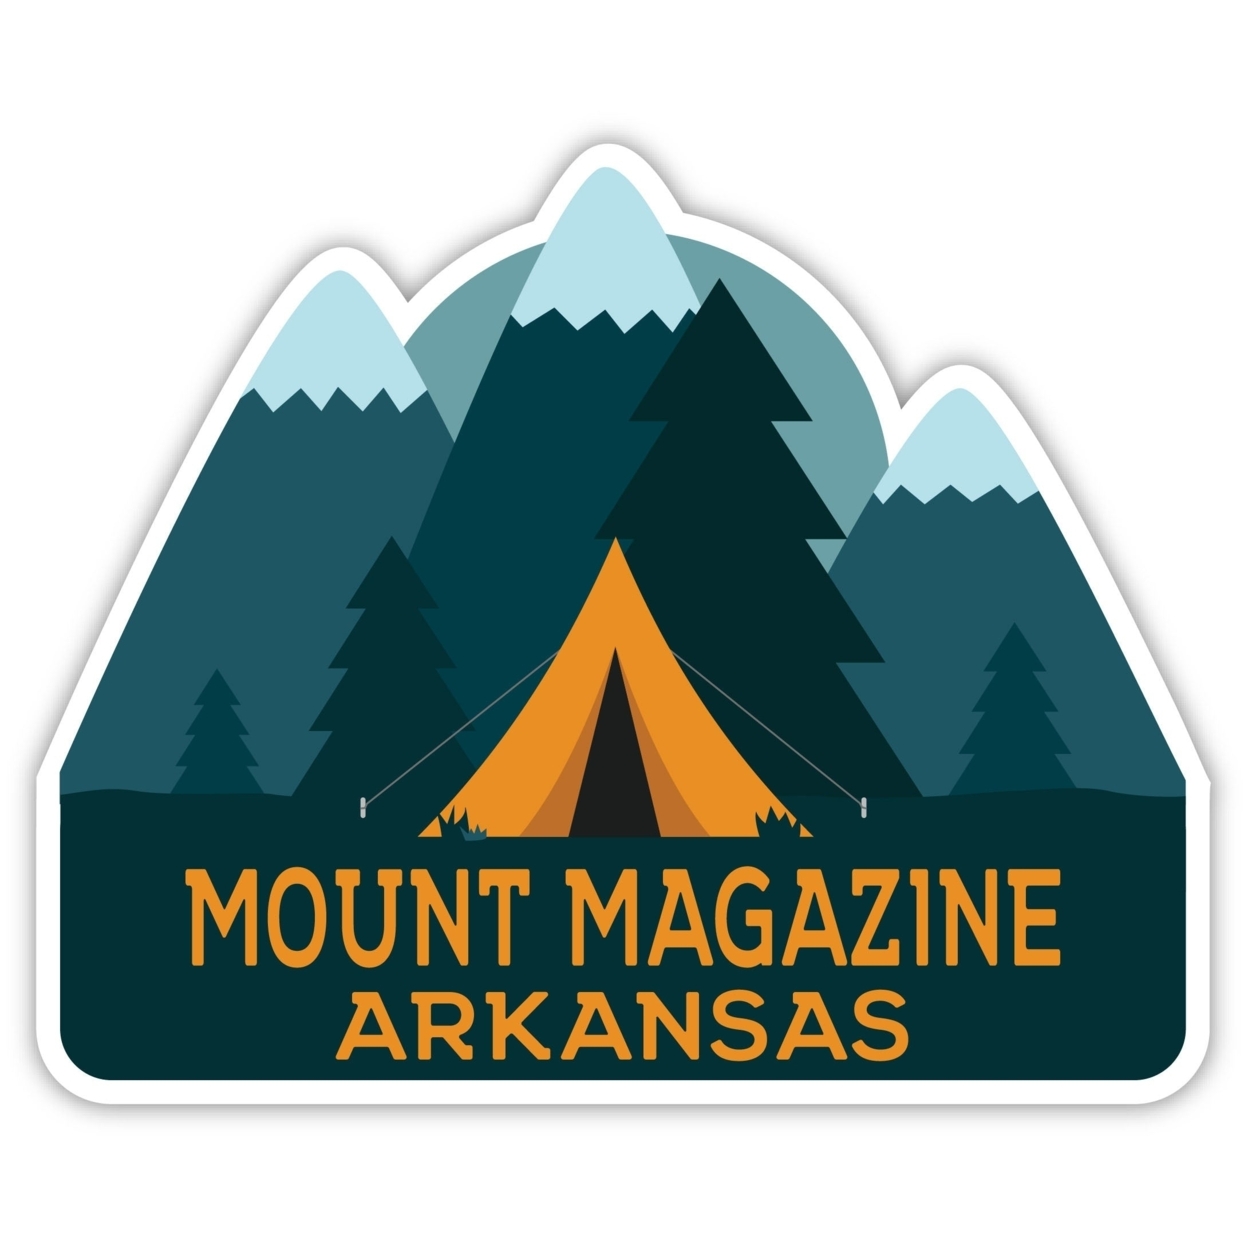 Mount Magazine Arkansas Souvenir Decorative Stickers (Choose Theme And Size) - Single Unit, 4-Inch, Tent